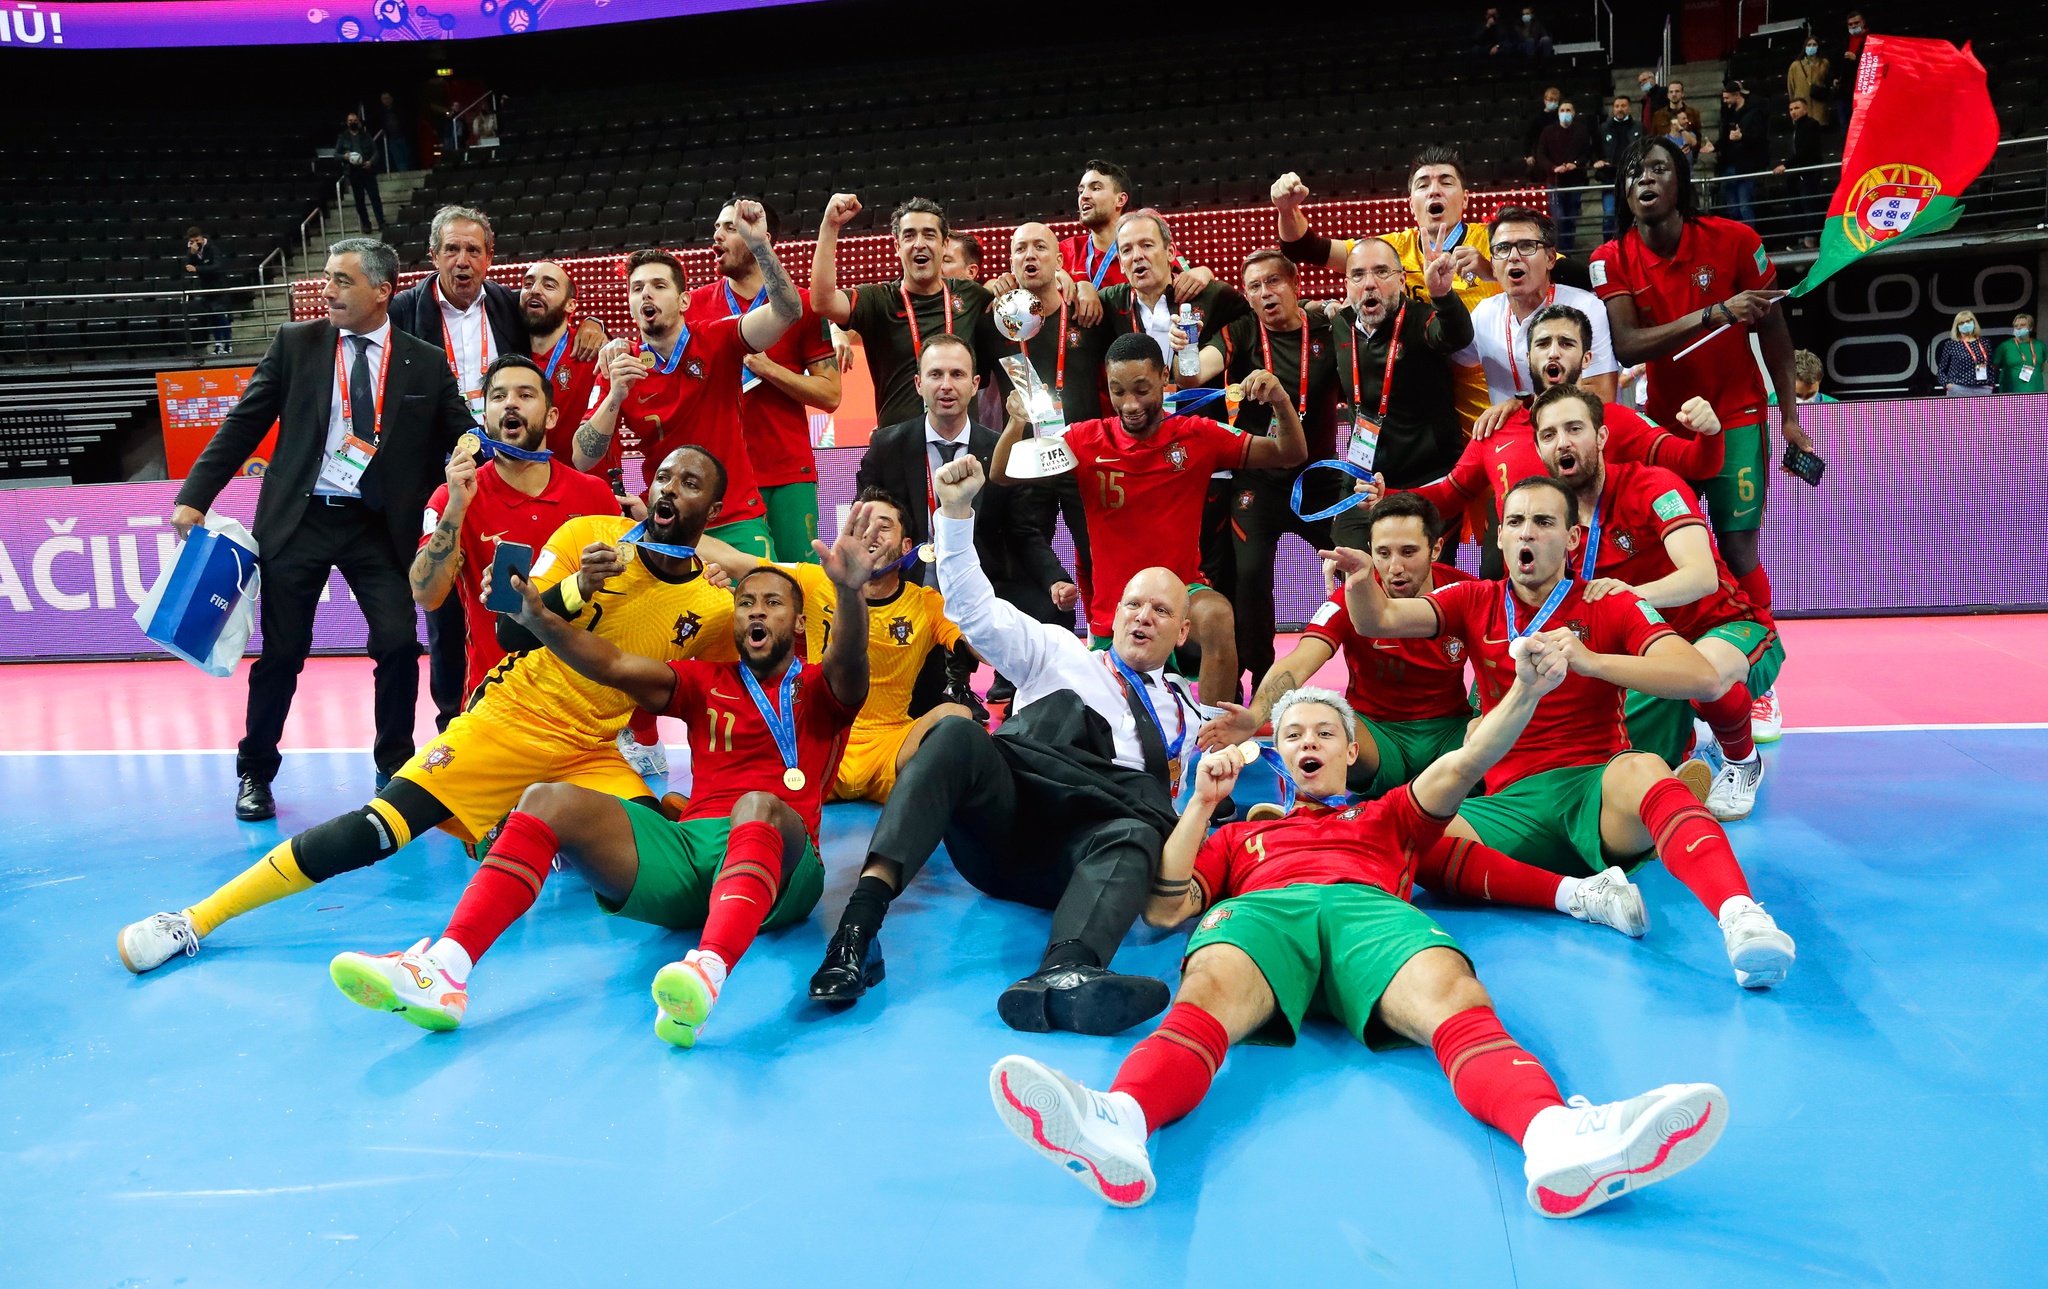 Futsal: Ricardinho volta a ser eleito Melhor Jogador do Mundo - Futebol 365